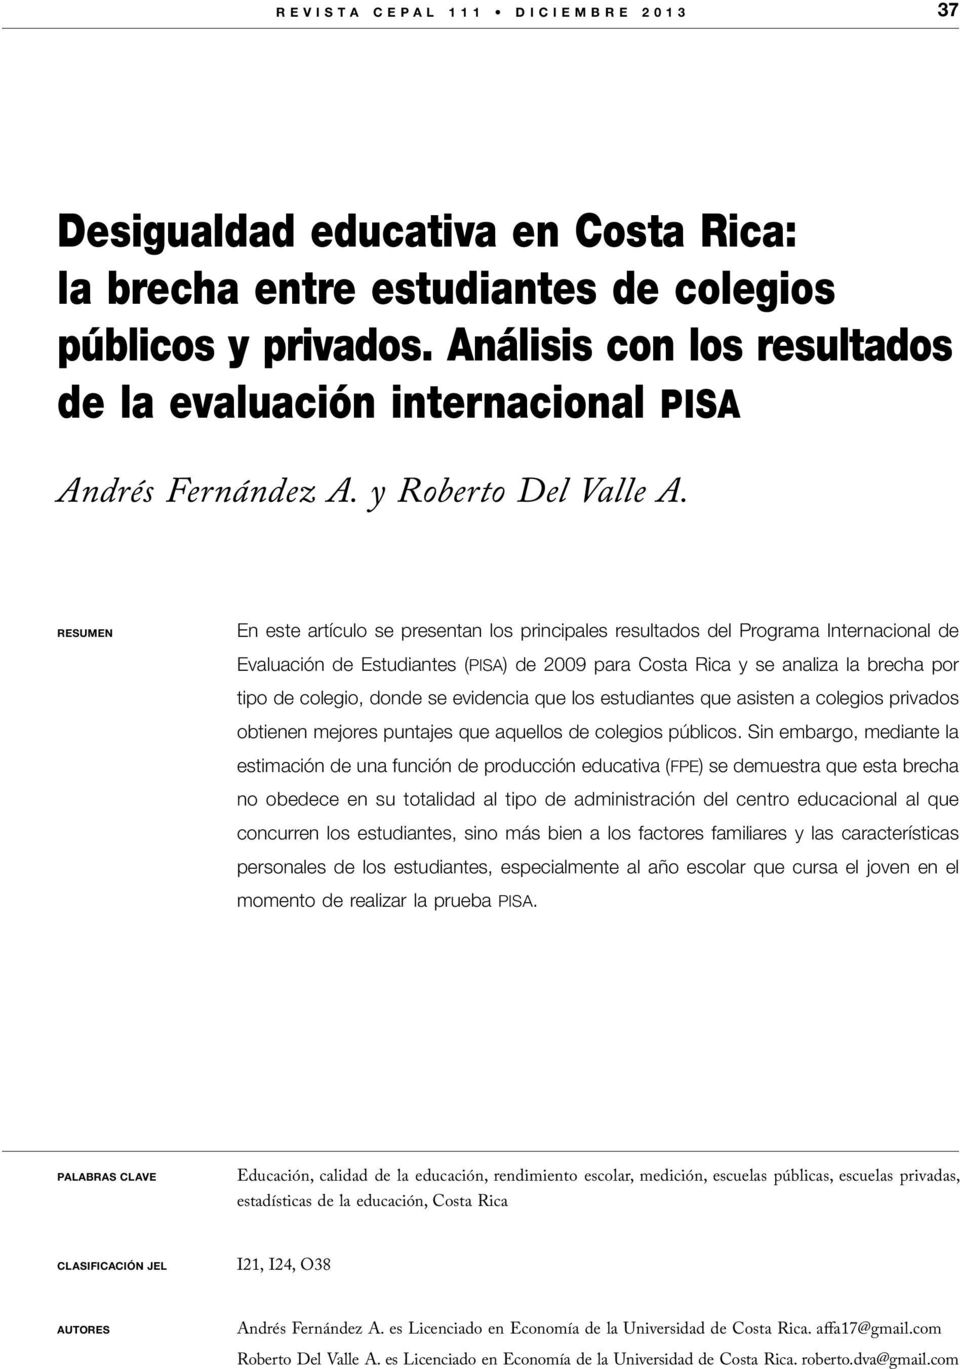 RESUMEN En este artículo se presentan los principales resultados del Programa Internacional de Evaluación de Estudiantes (pisa) de 2009 para Costa Rica y se analiza la brecha por tipo de colegio,